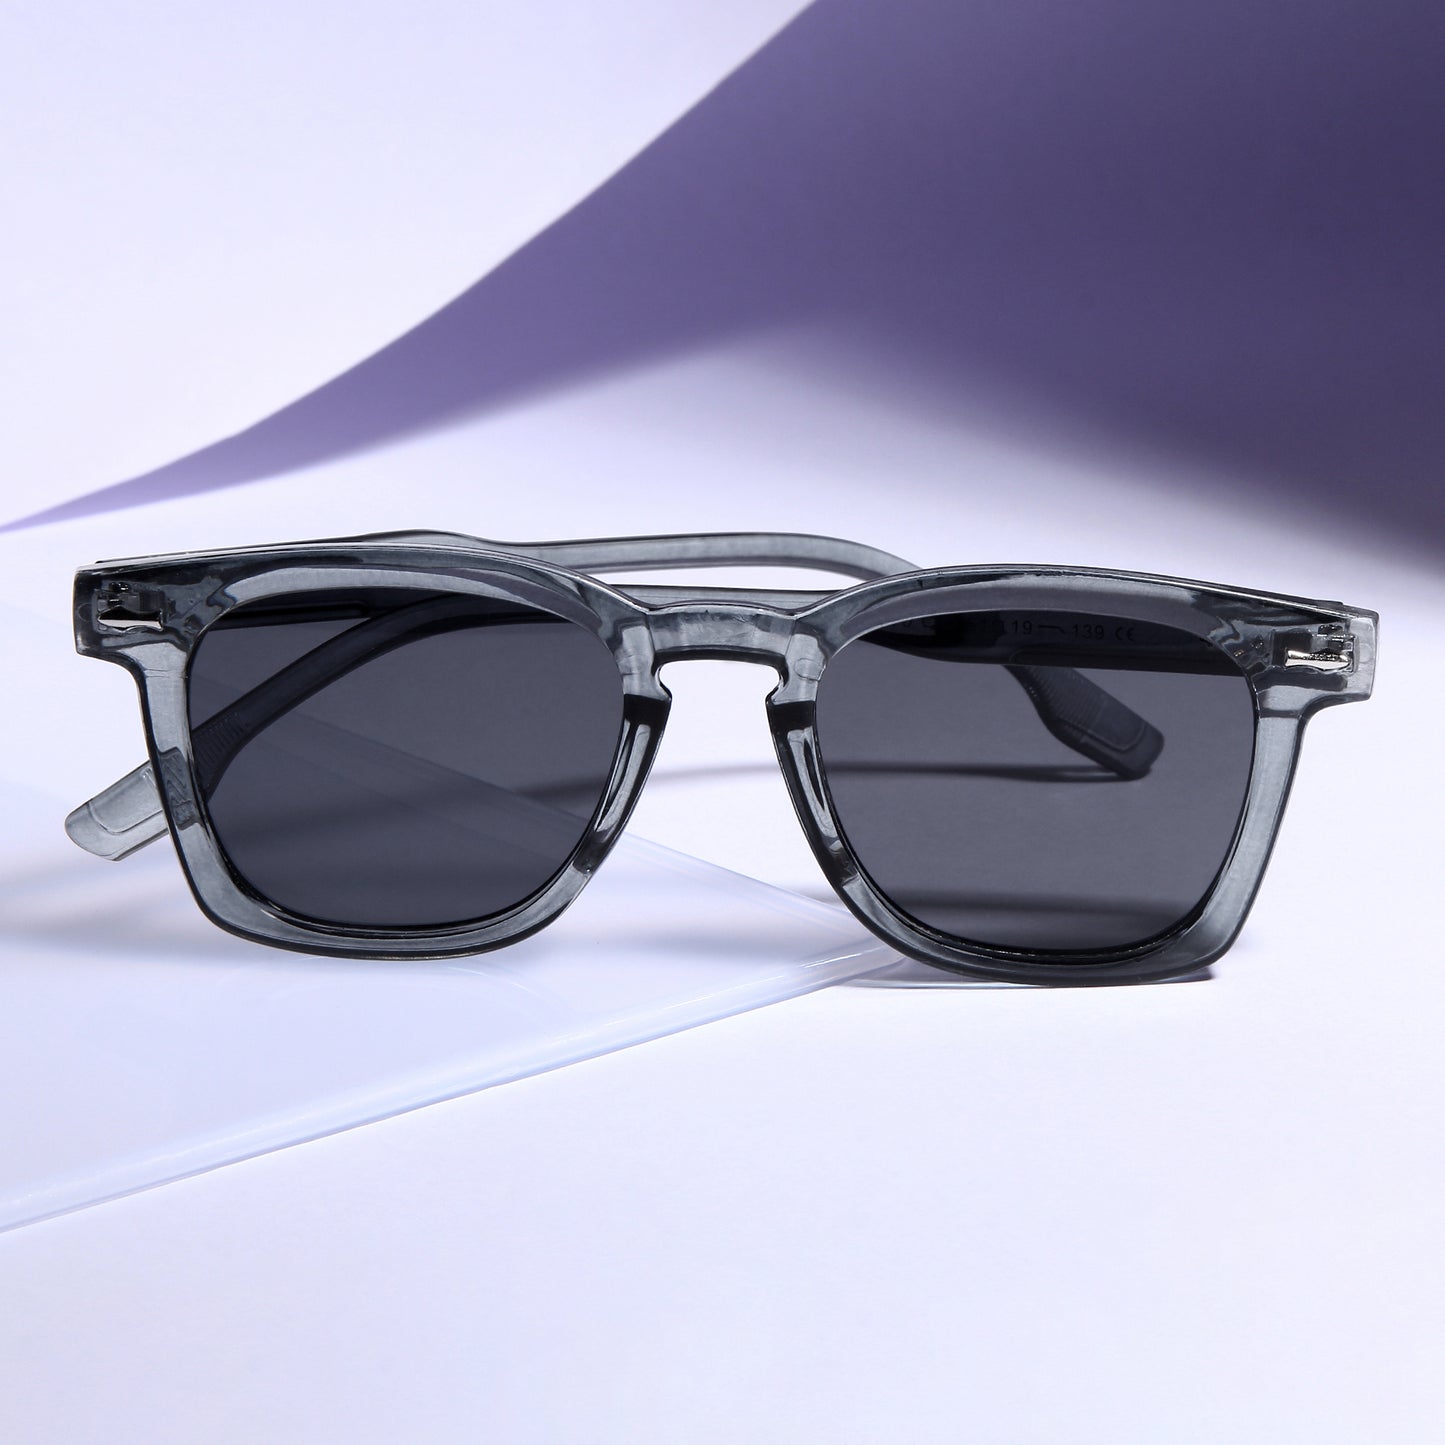 Michel Grey Black Square Sunglasses